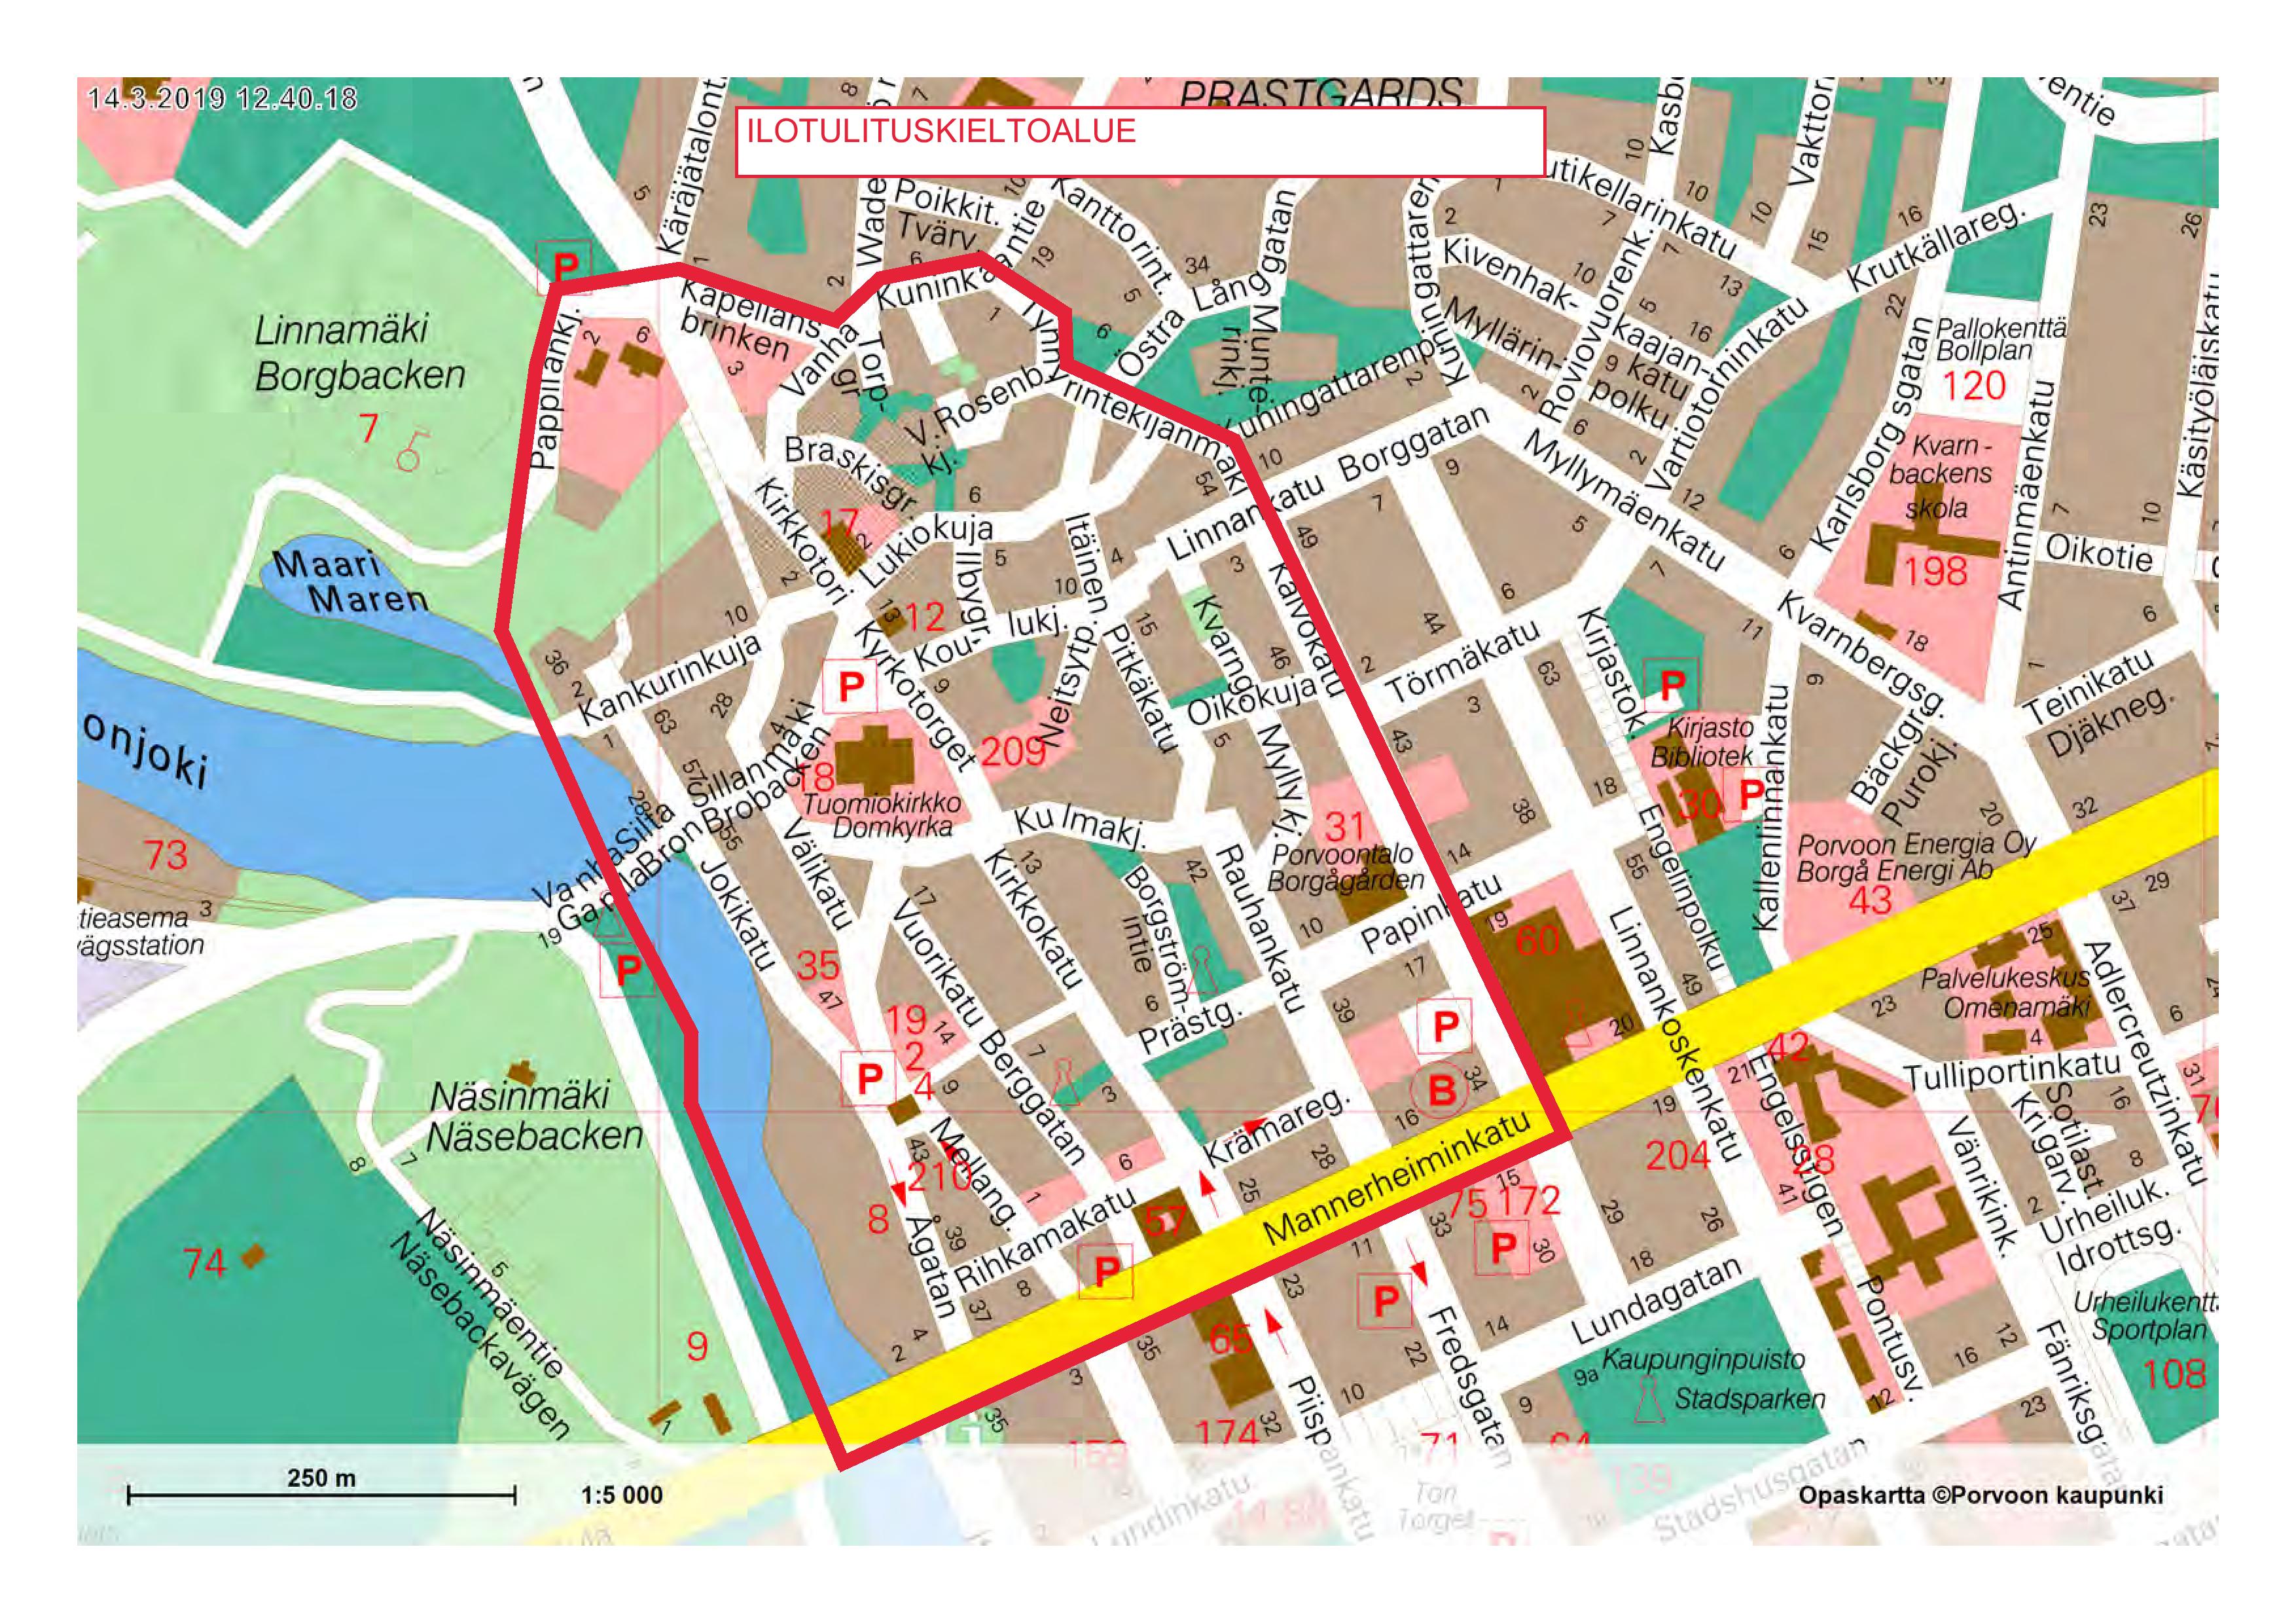 Kartbild över fyrverkeriförbudet i Gamla stan i Borgå.